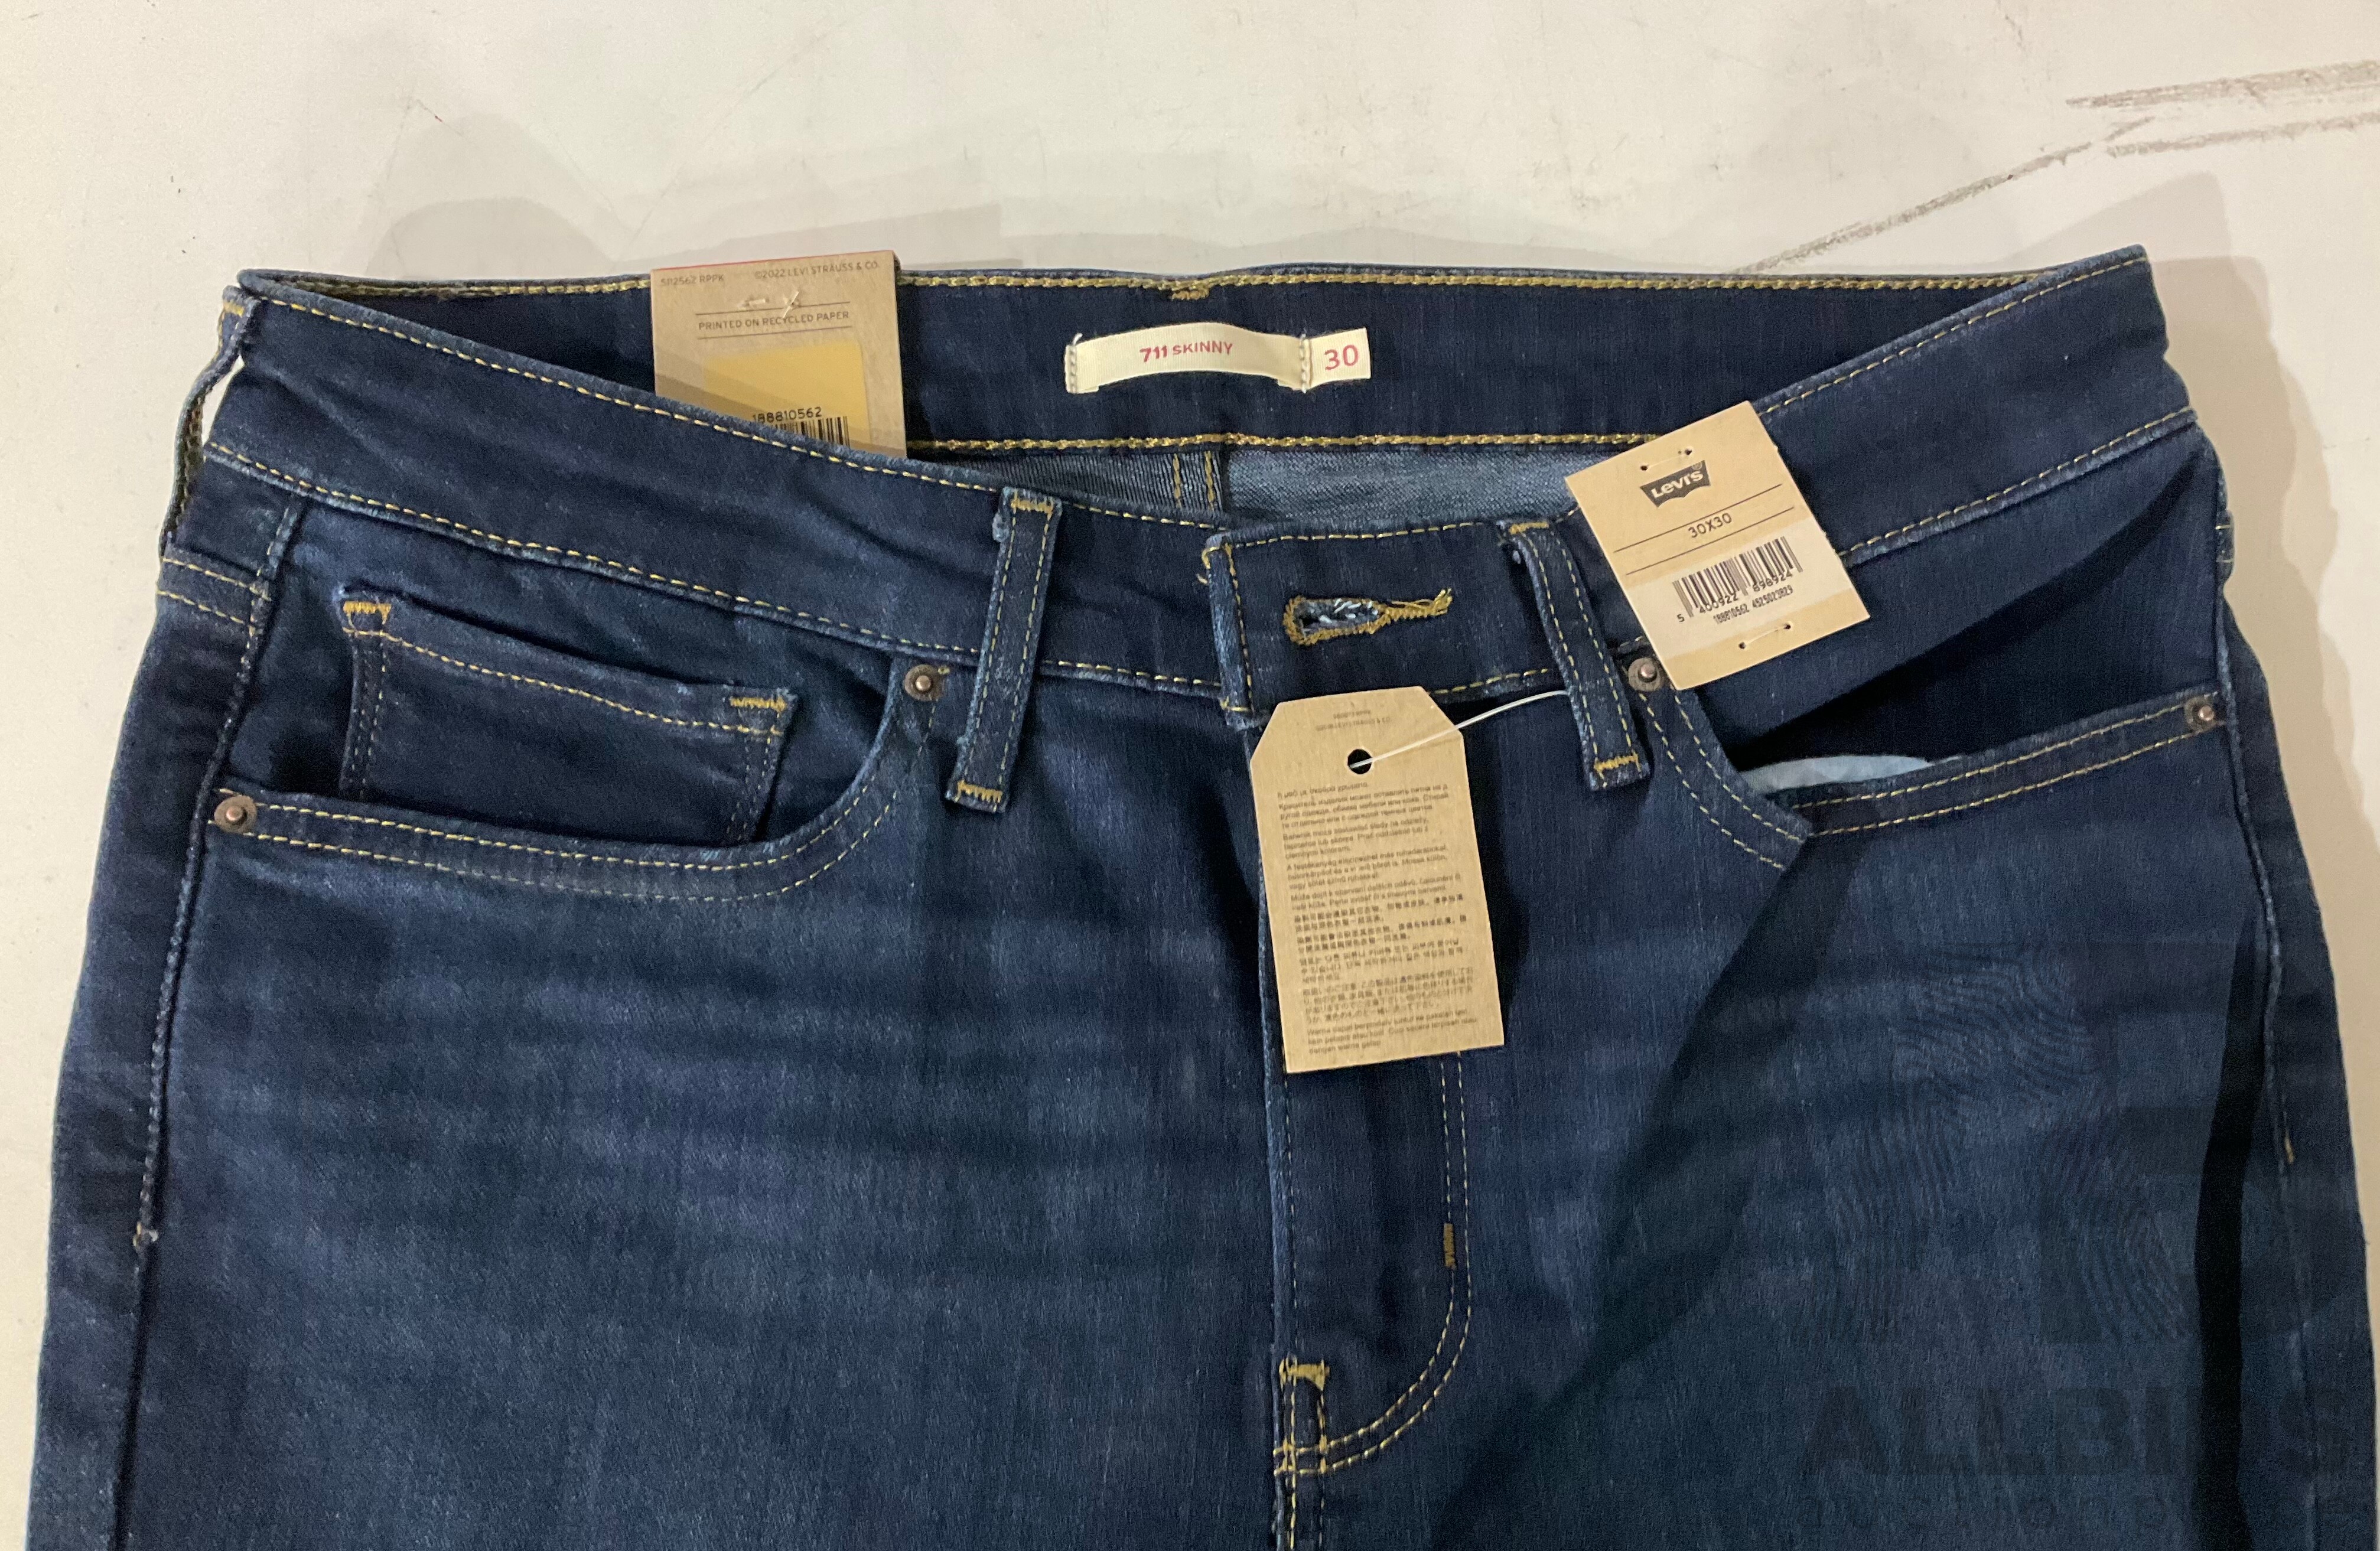 LEVIS Women's 711 Skinny Jeans - Lot 1426409 | ALLBIDS